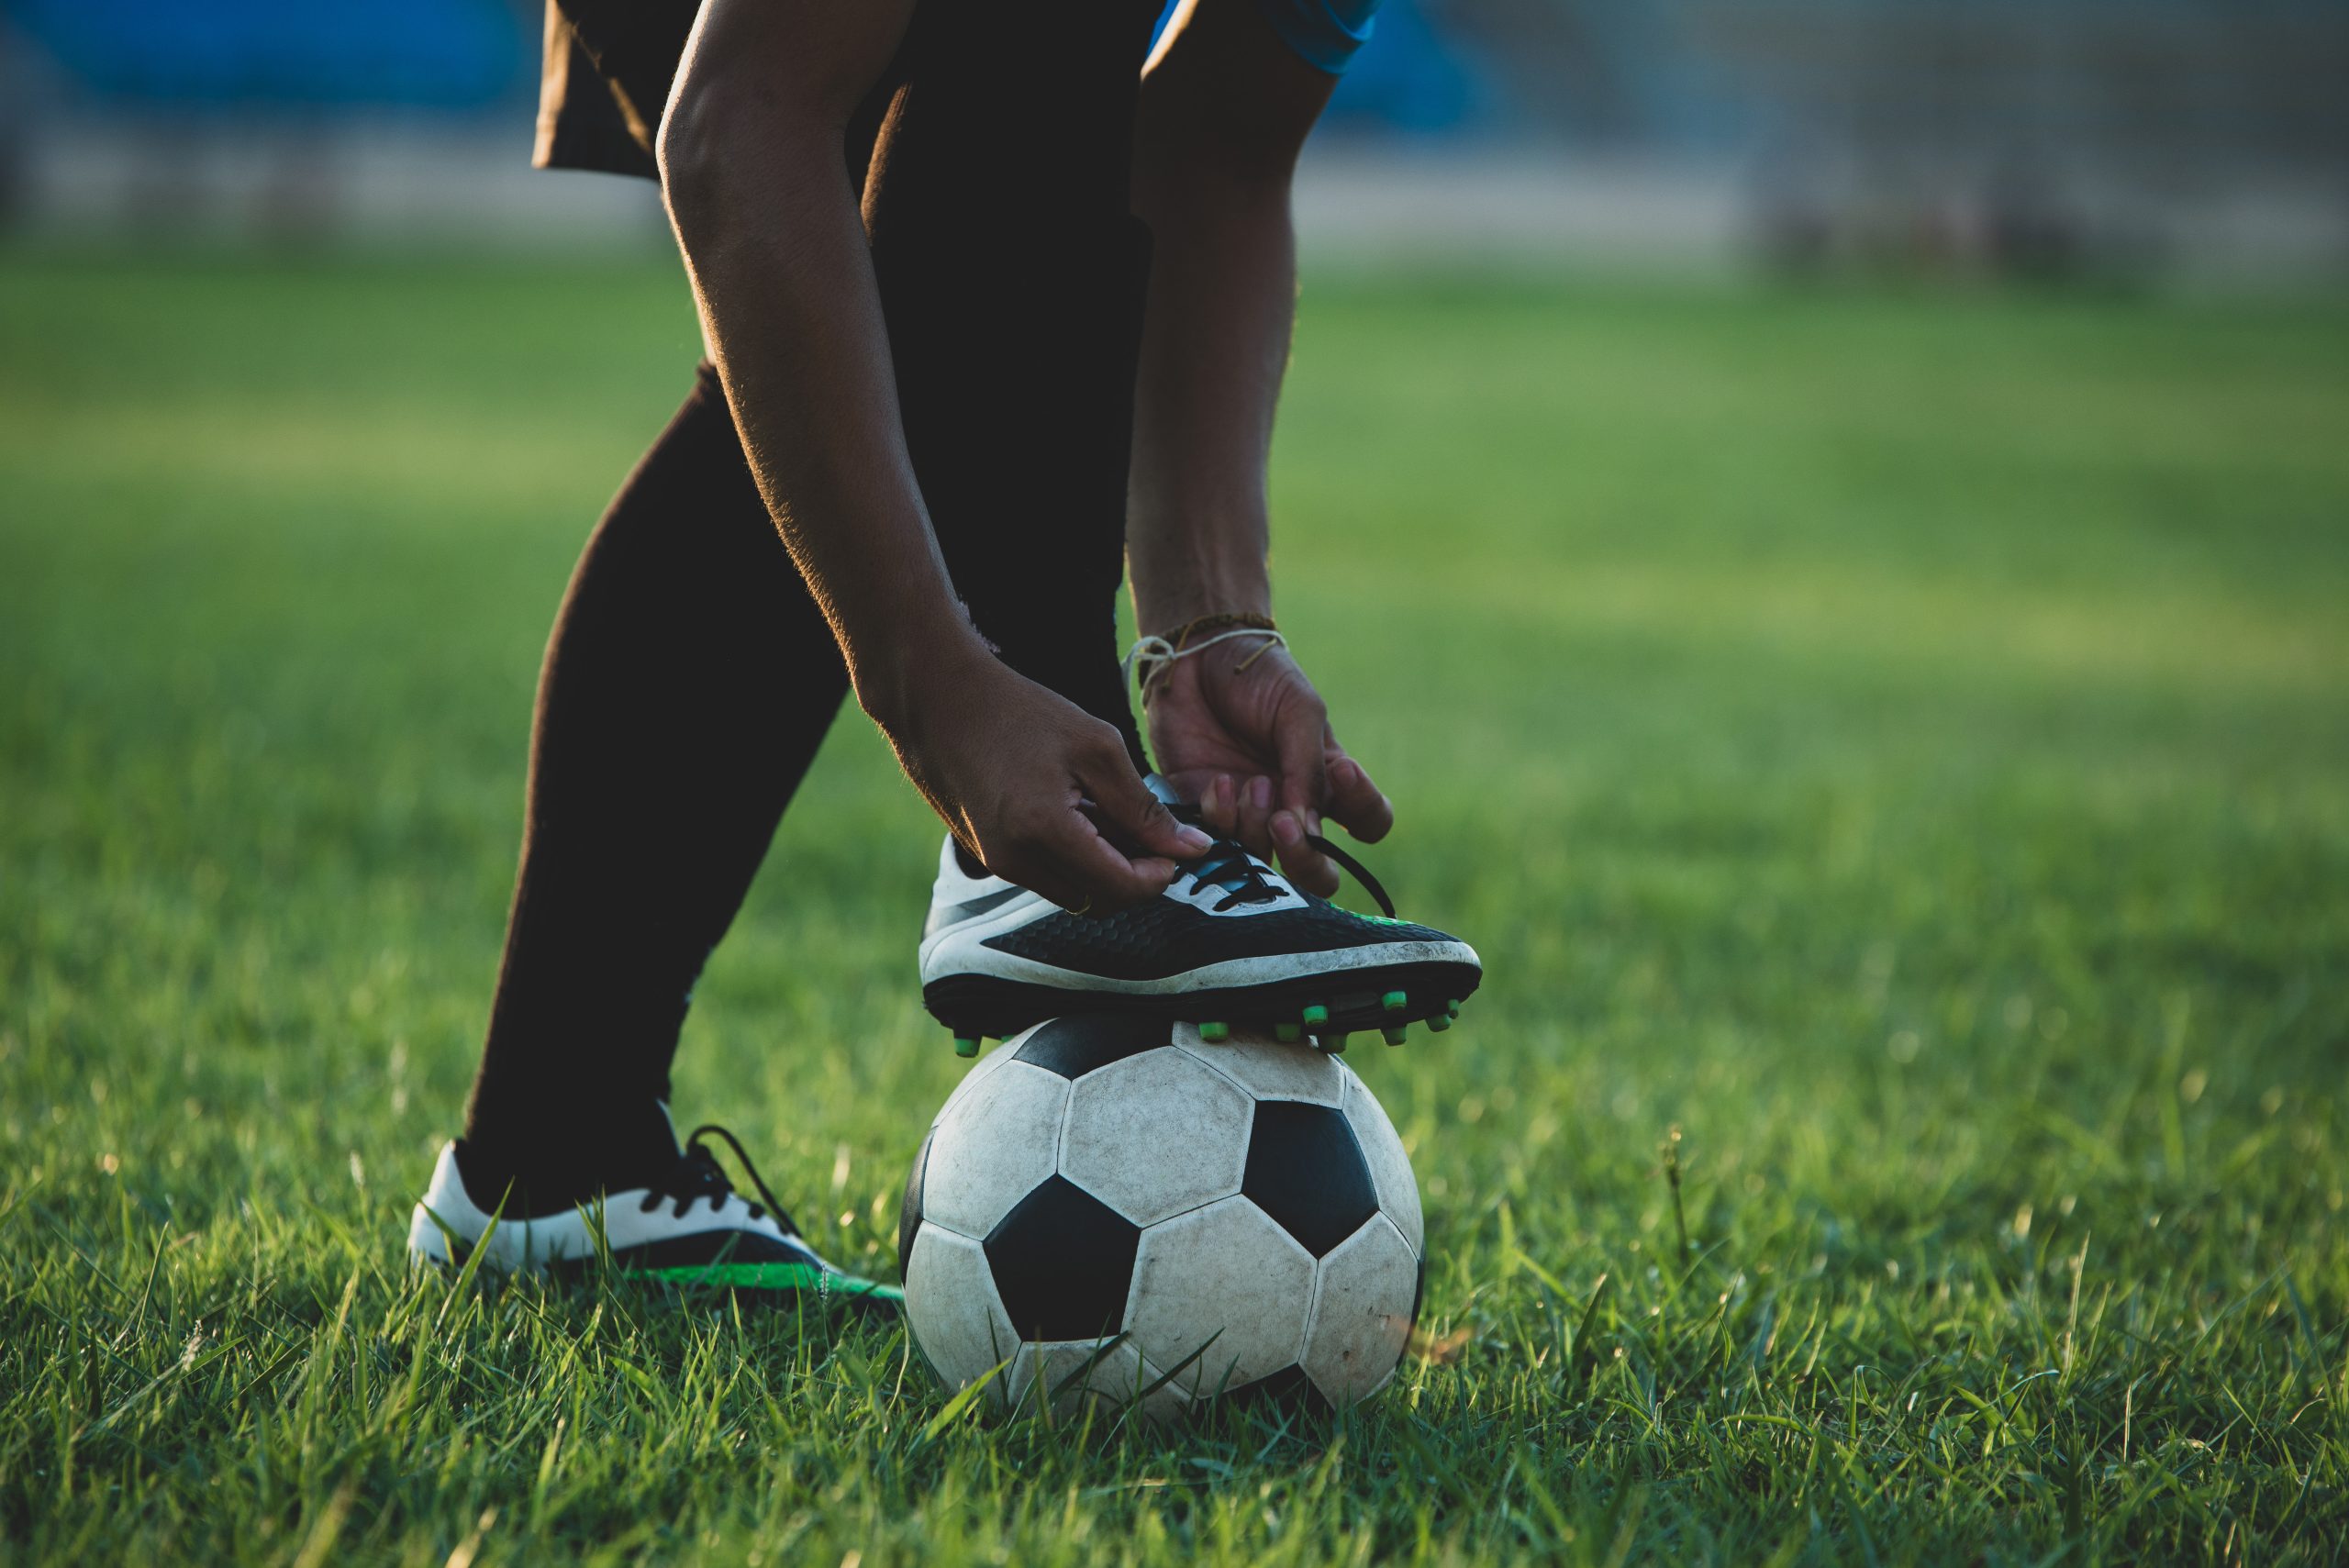 EEUU | Así puedes aplicar a una beca deportiva por medio del fútbol (+Requisitos)